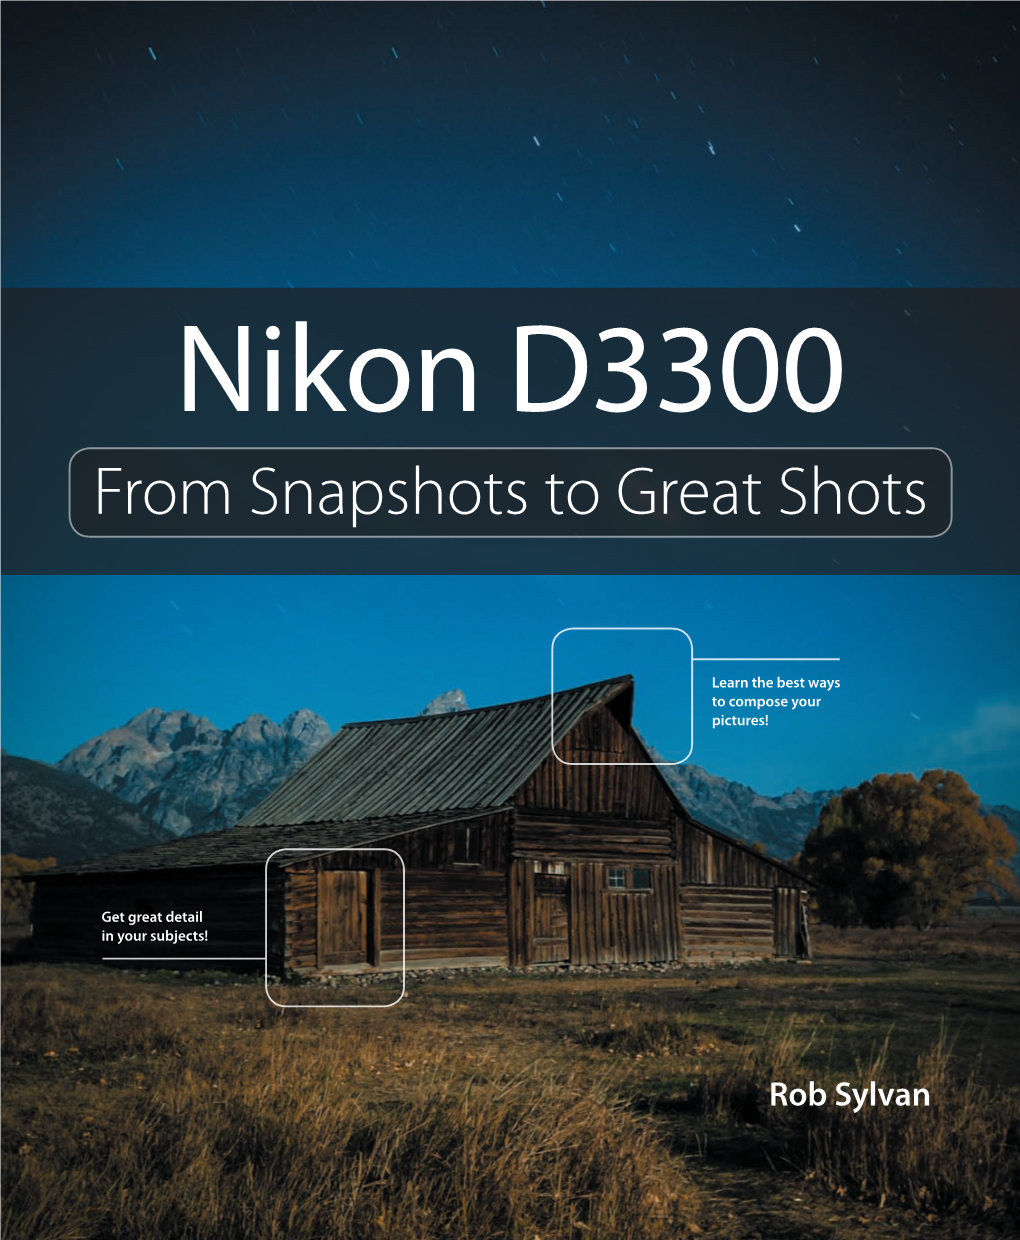 Nikon D3300 D3300 Nikon from Snapshots to Great Shots